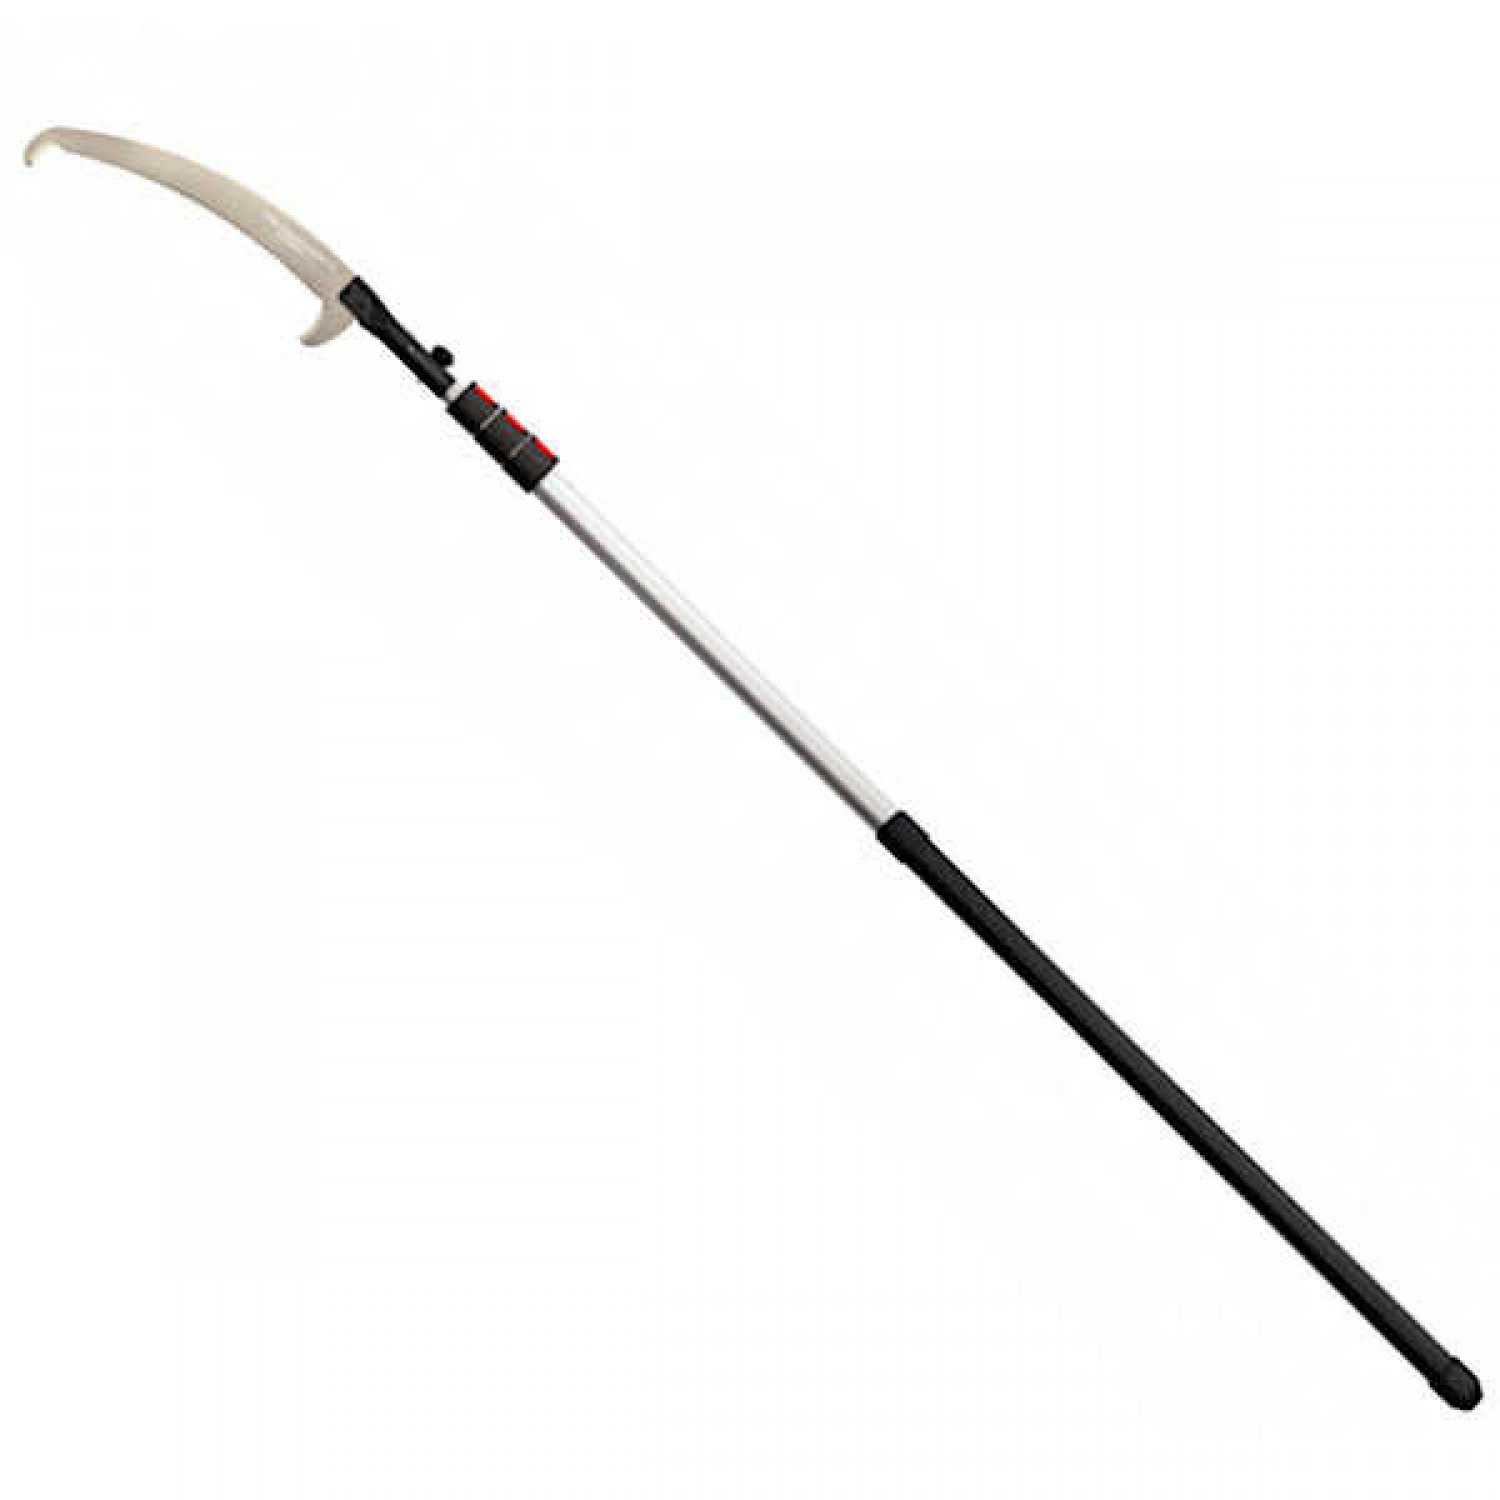 Silky HAYAUCHI 6300 Pole Saw 48cm Blade